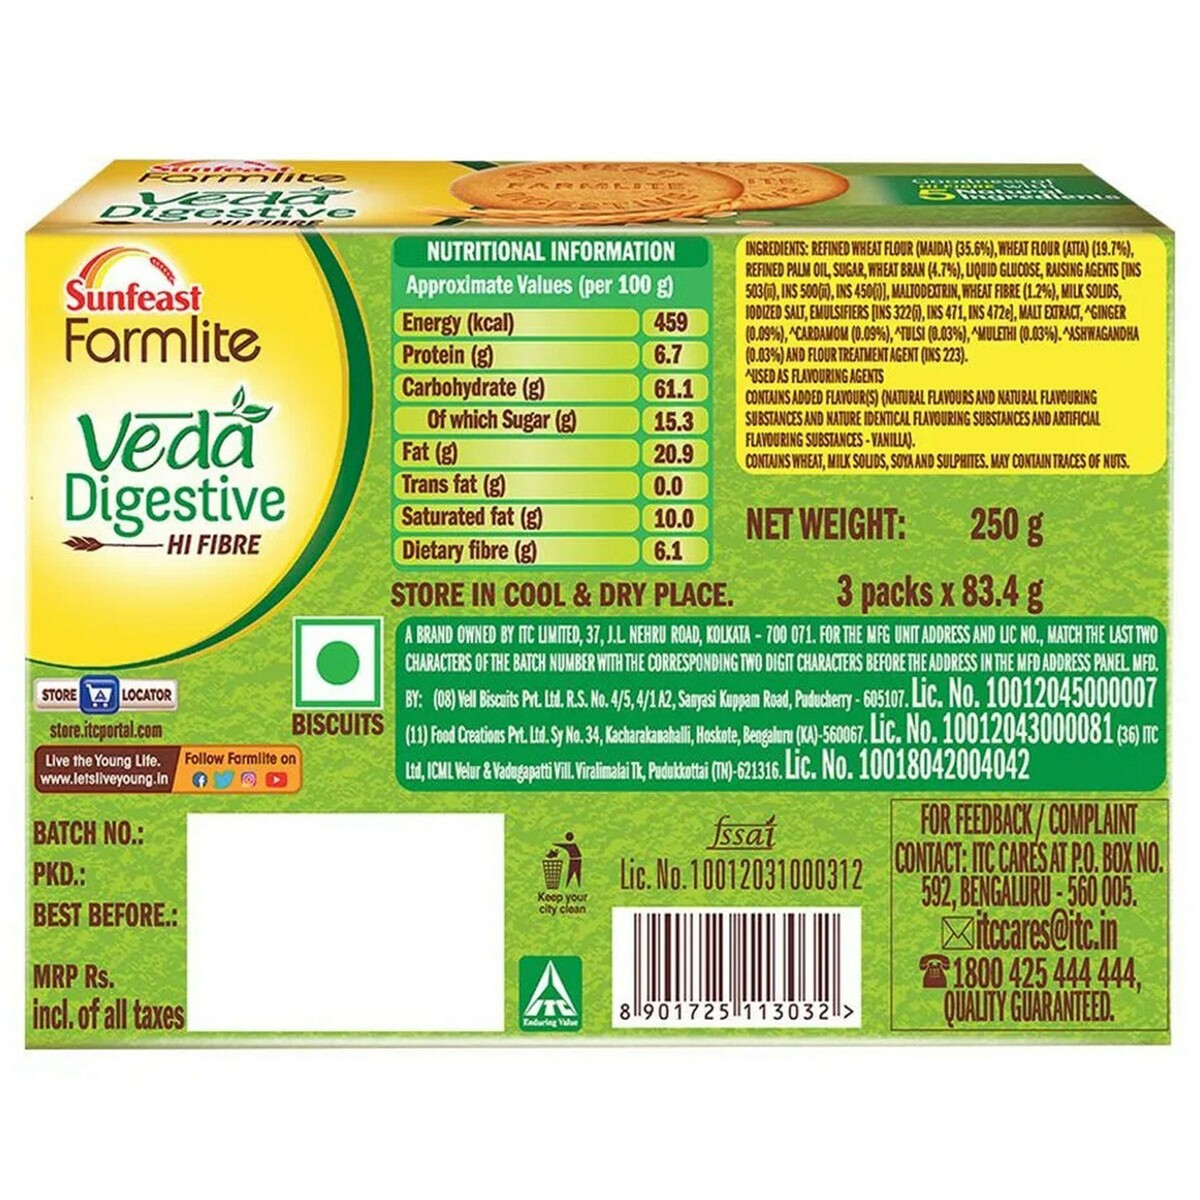 Sunfeast Farmlite Veda Digestive 250g